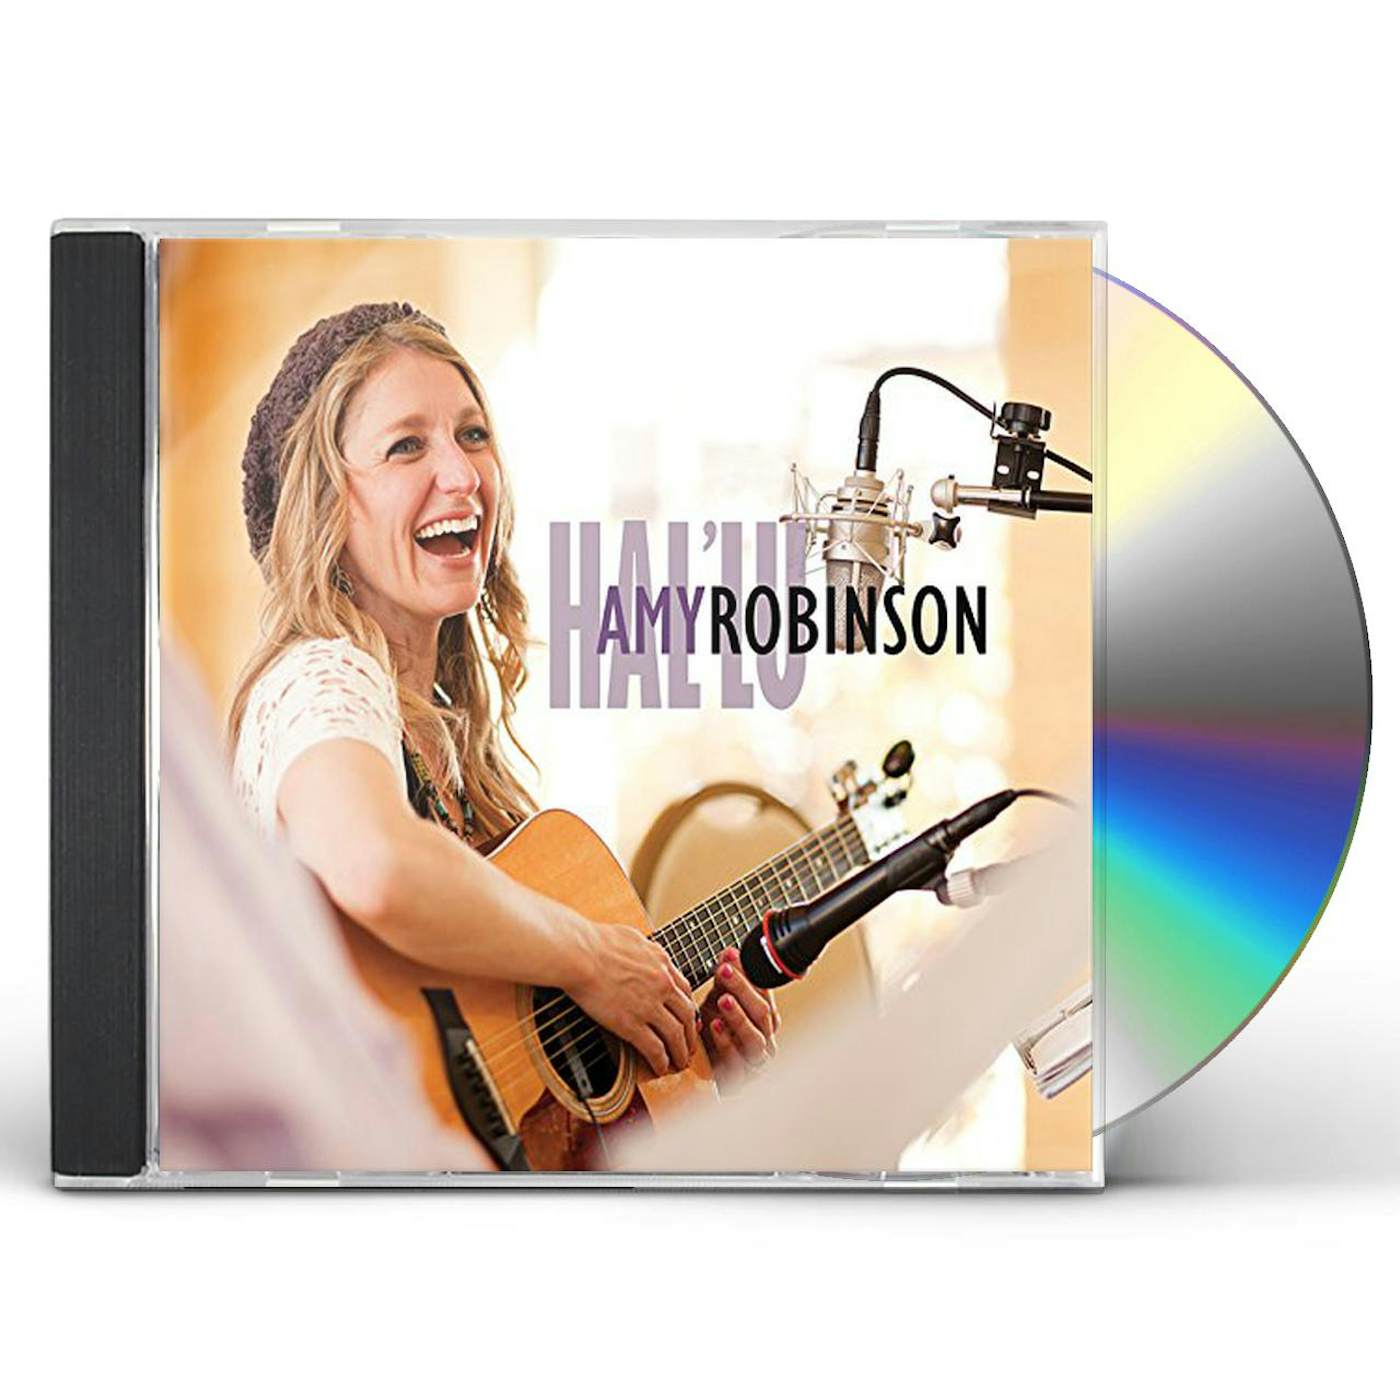 Amy Robinson HAL'LU CD